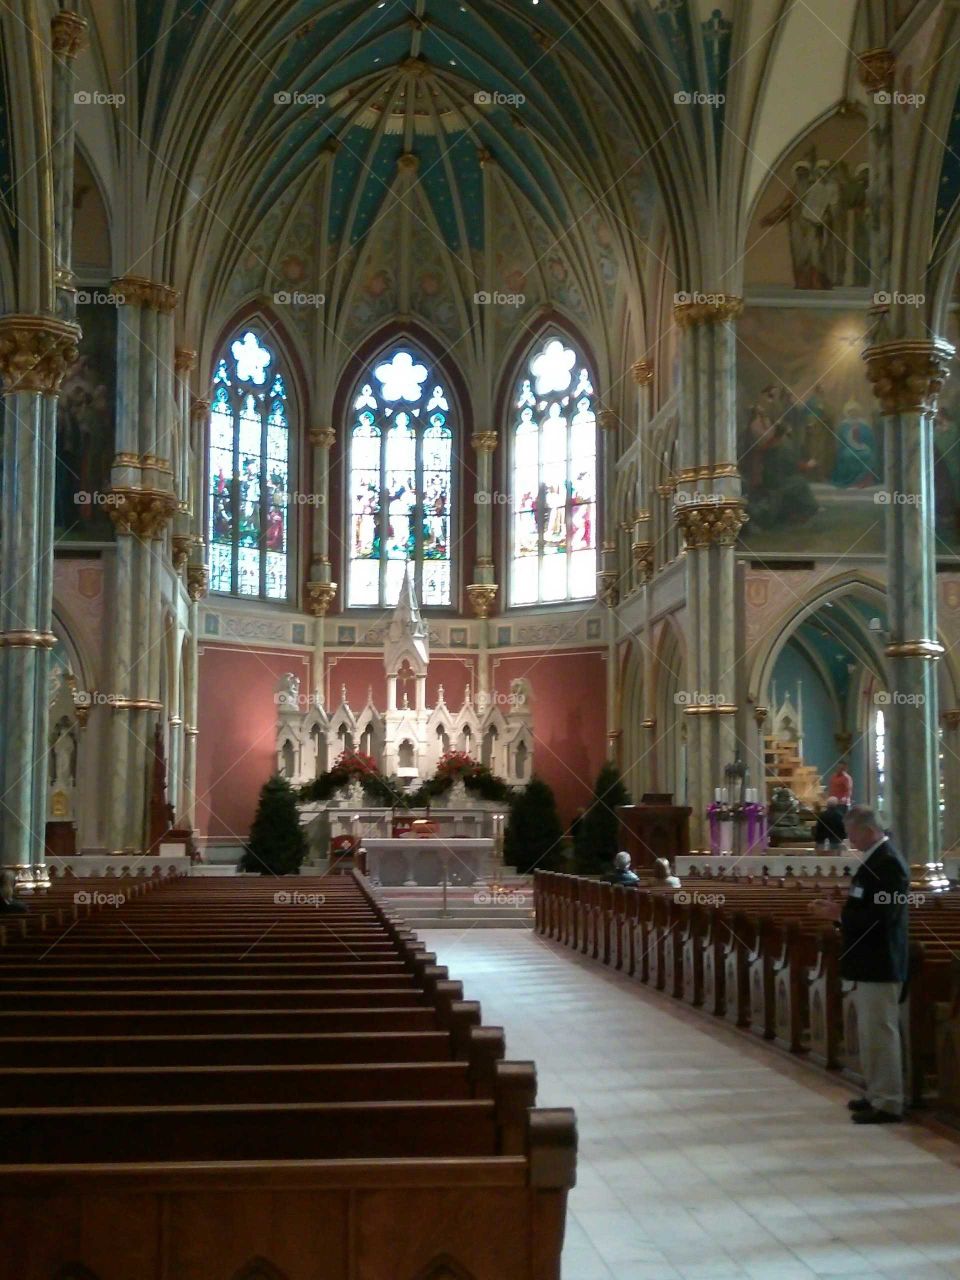 Catholic Church in Savannah